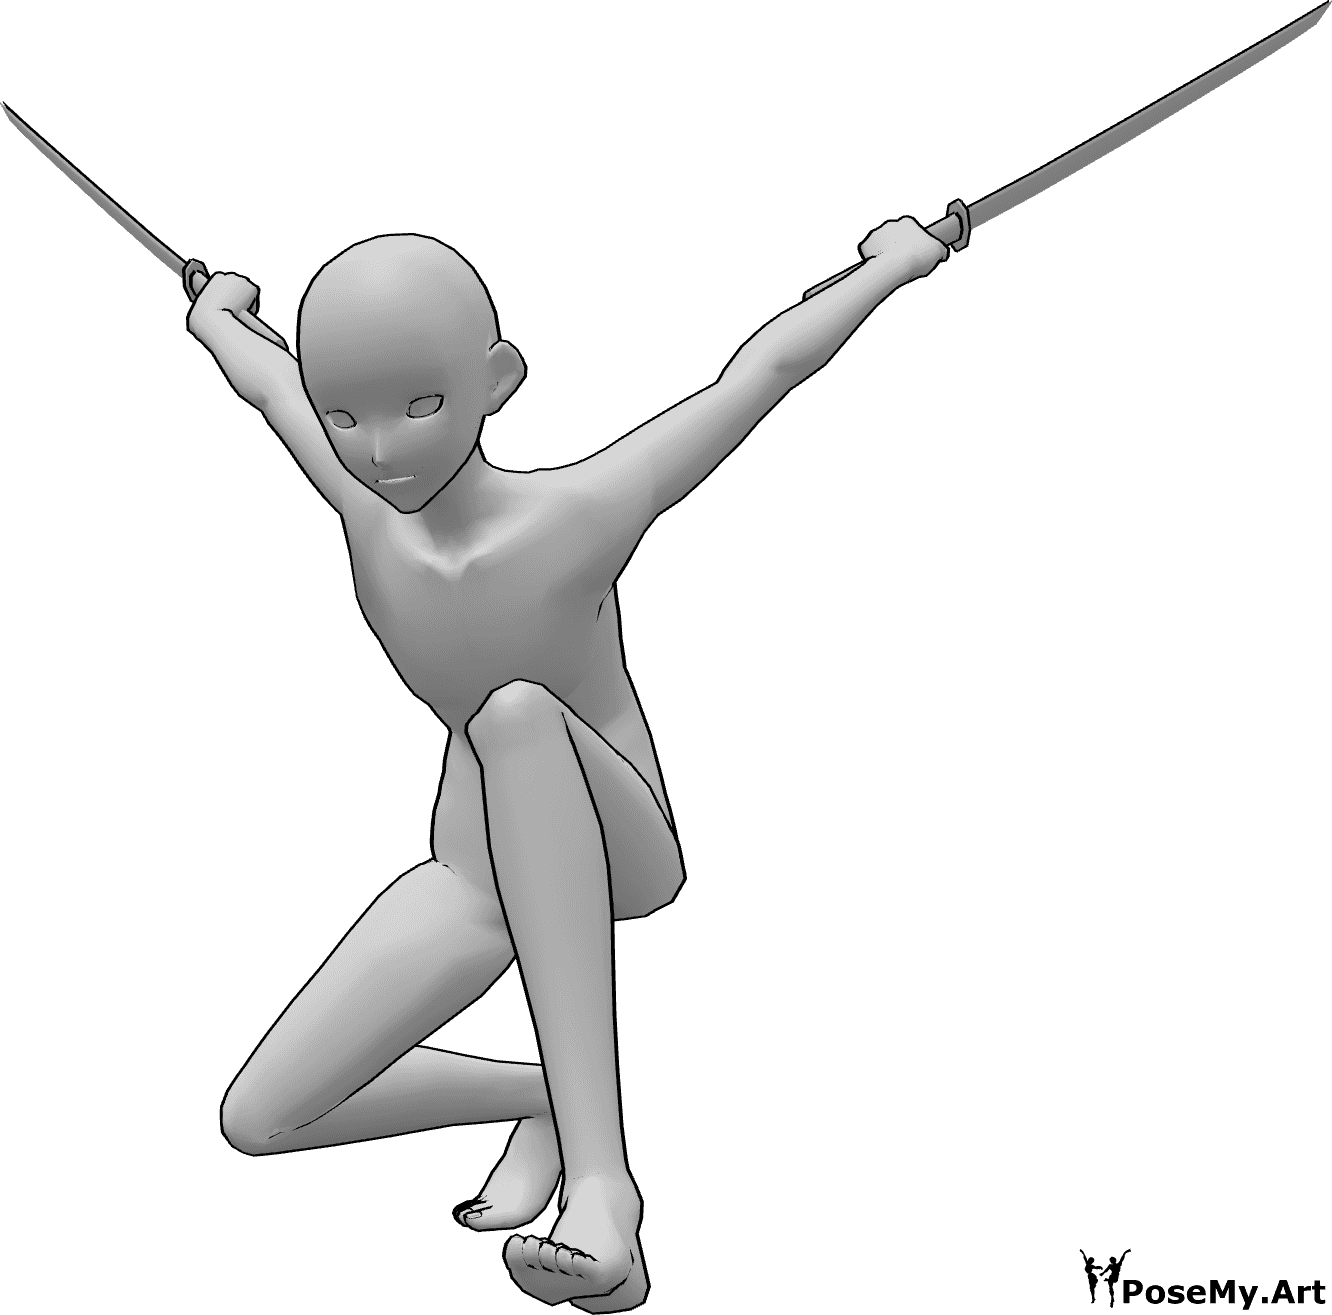 Riferimento alle pose- Posa di atterraggio ninja anime - Un maschio anonimo sta atterrando a terra, tenendo la katana in entrambe le mani